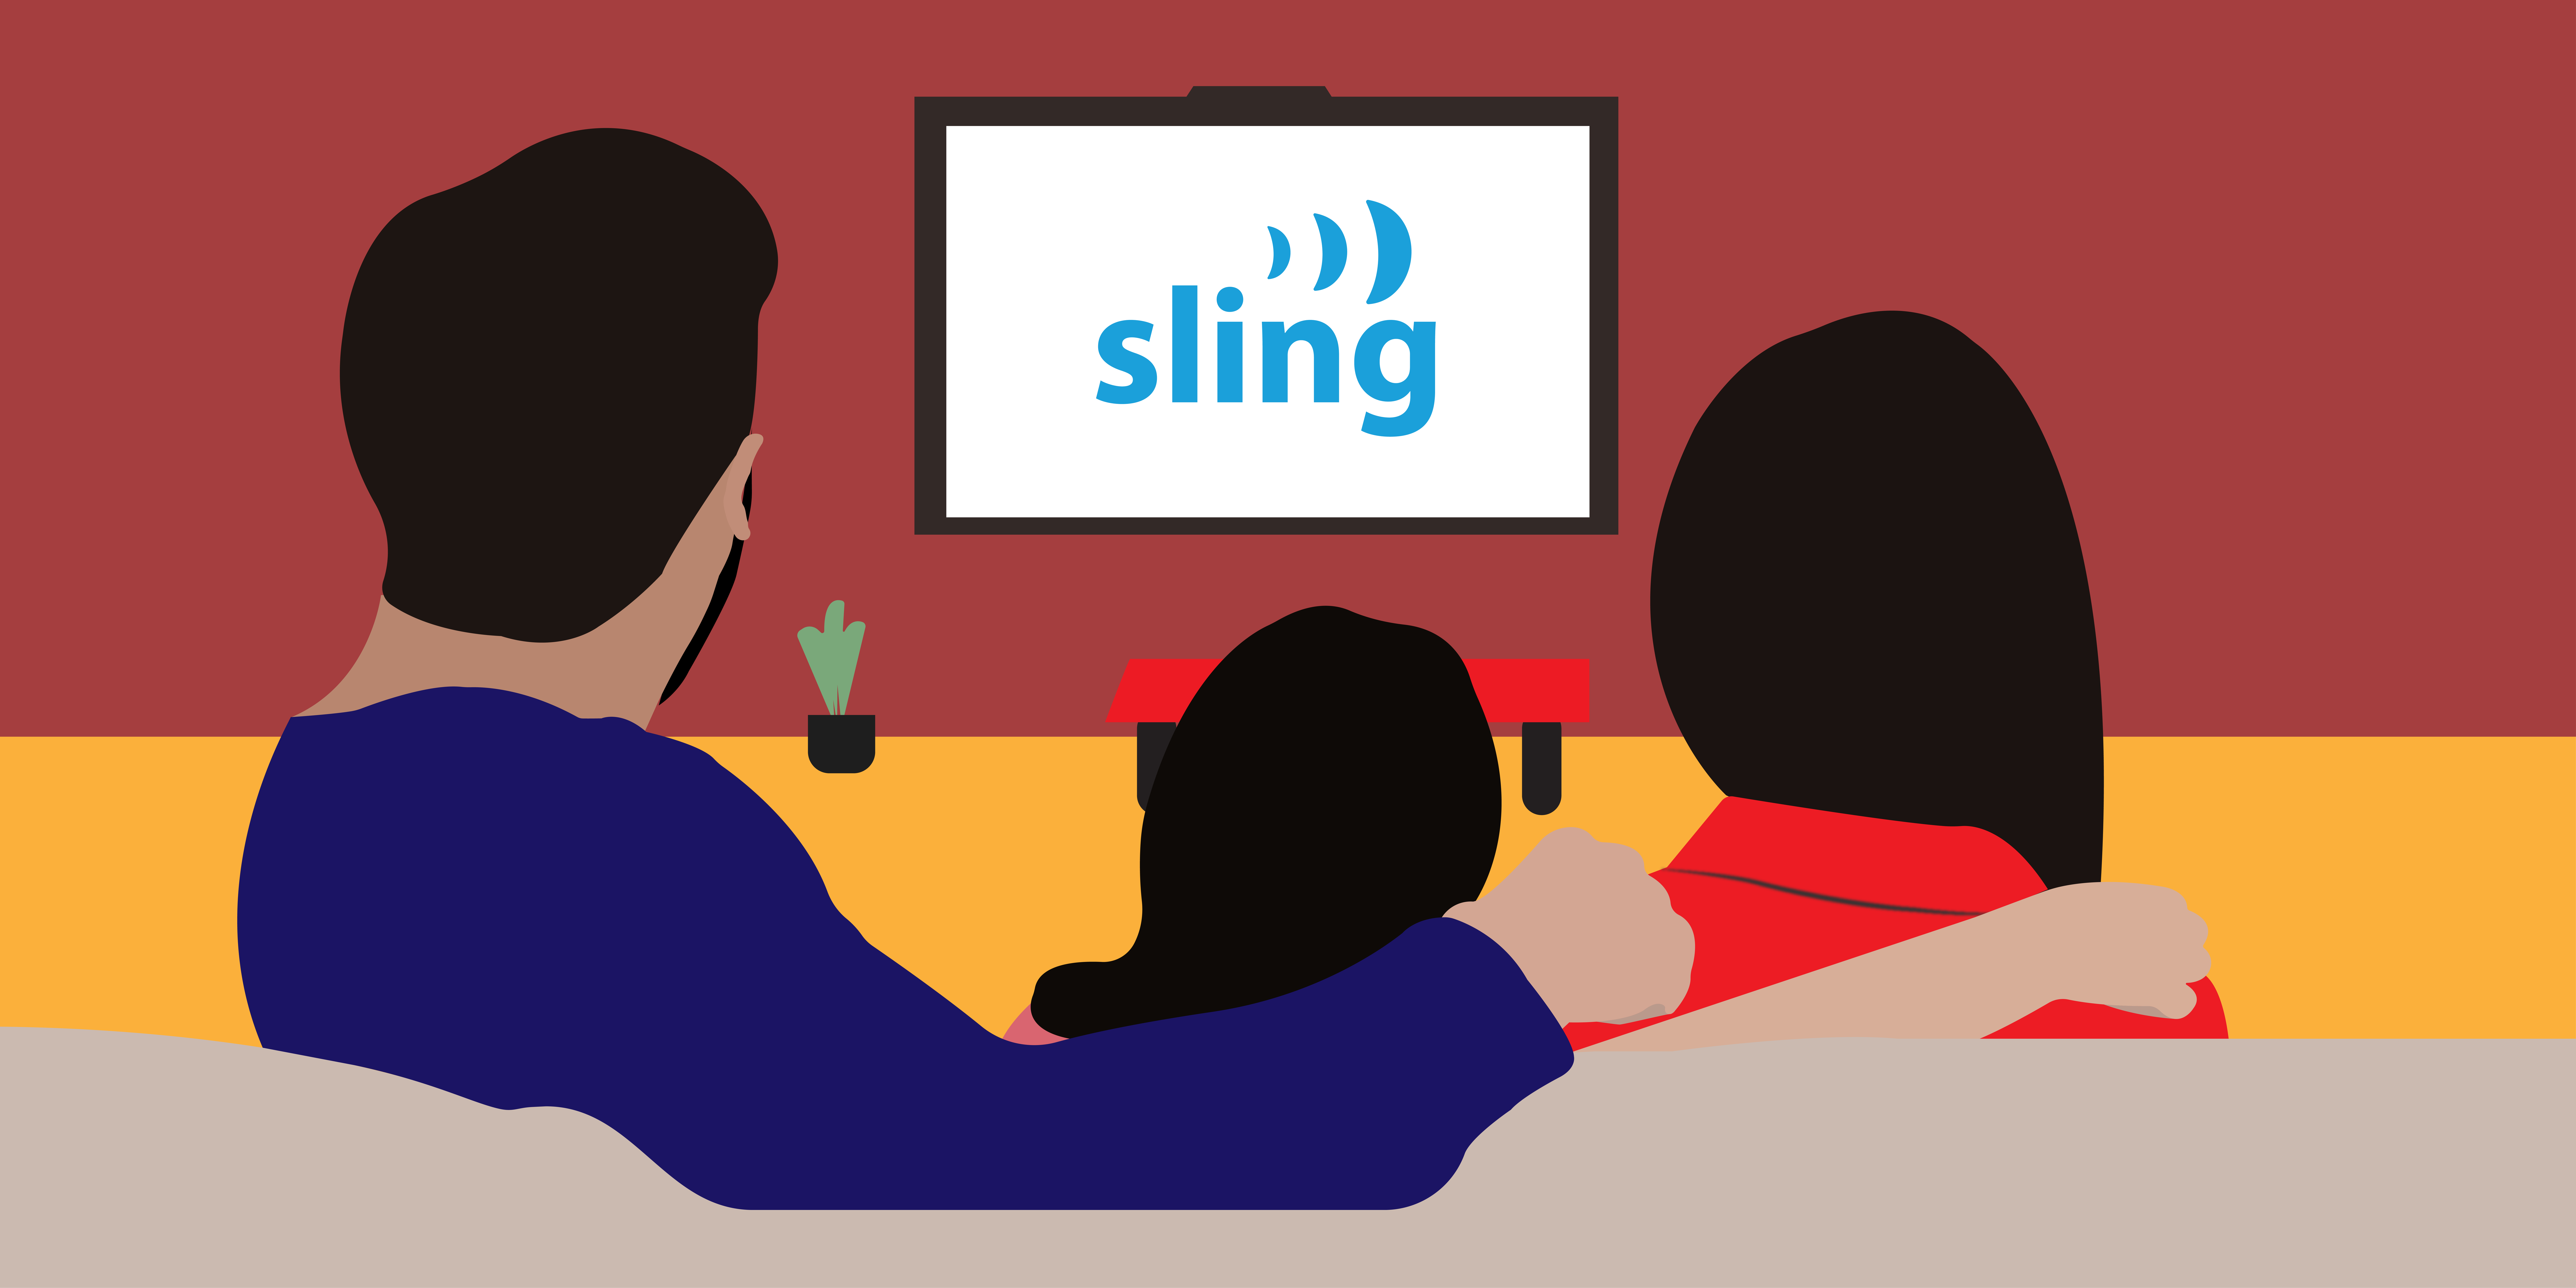 Sling live Tv illustration